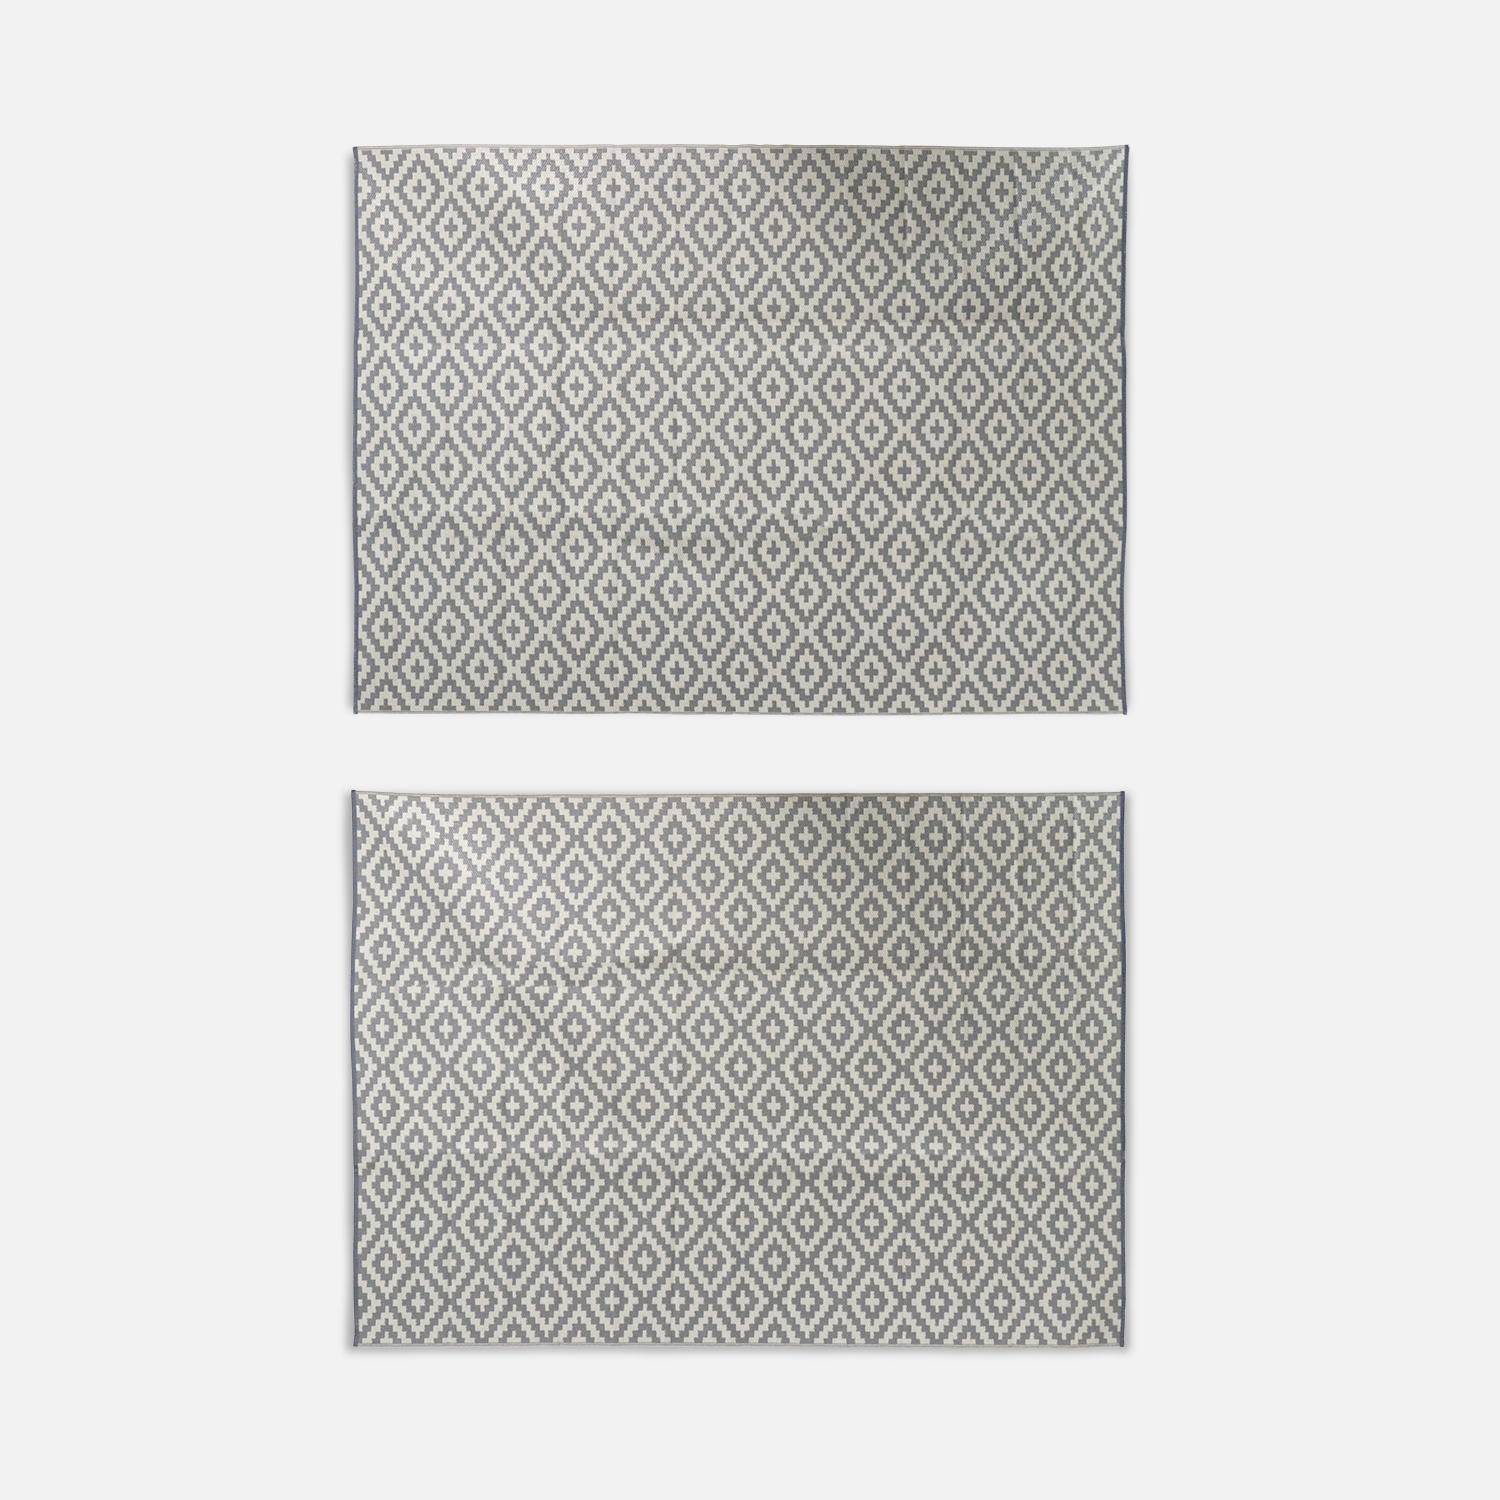 Tapete de exterior 270x360cm STOCKHOLM - Retangular, padrão de diamante caqui, jacquard, reversível, interior / exterior,,sweeek,Photo2